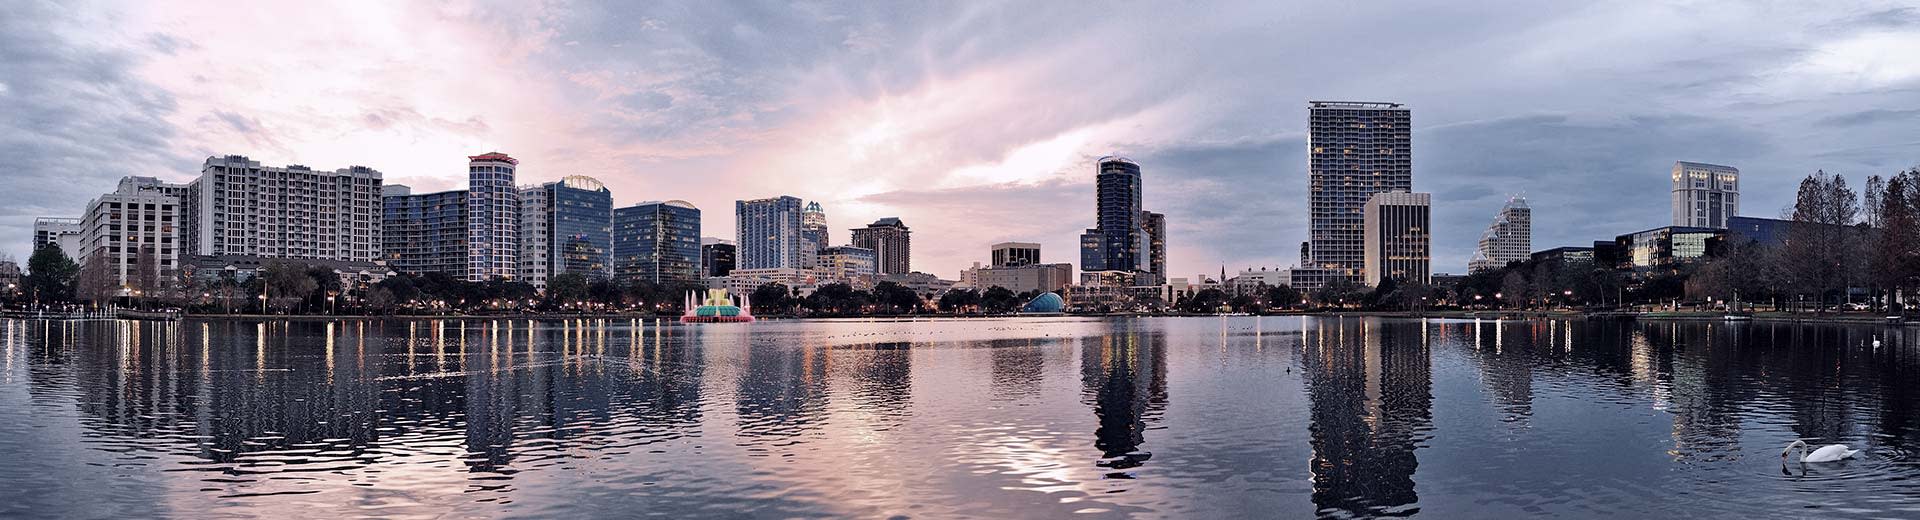 Los altos edificios cuadrados de Orlando dan al agua del Océano Atlántico.